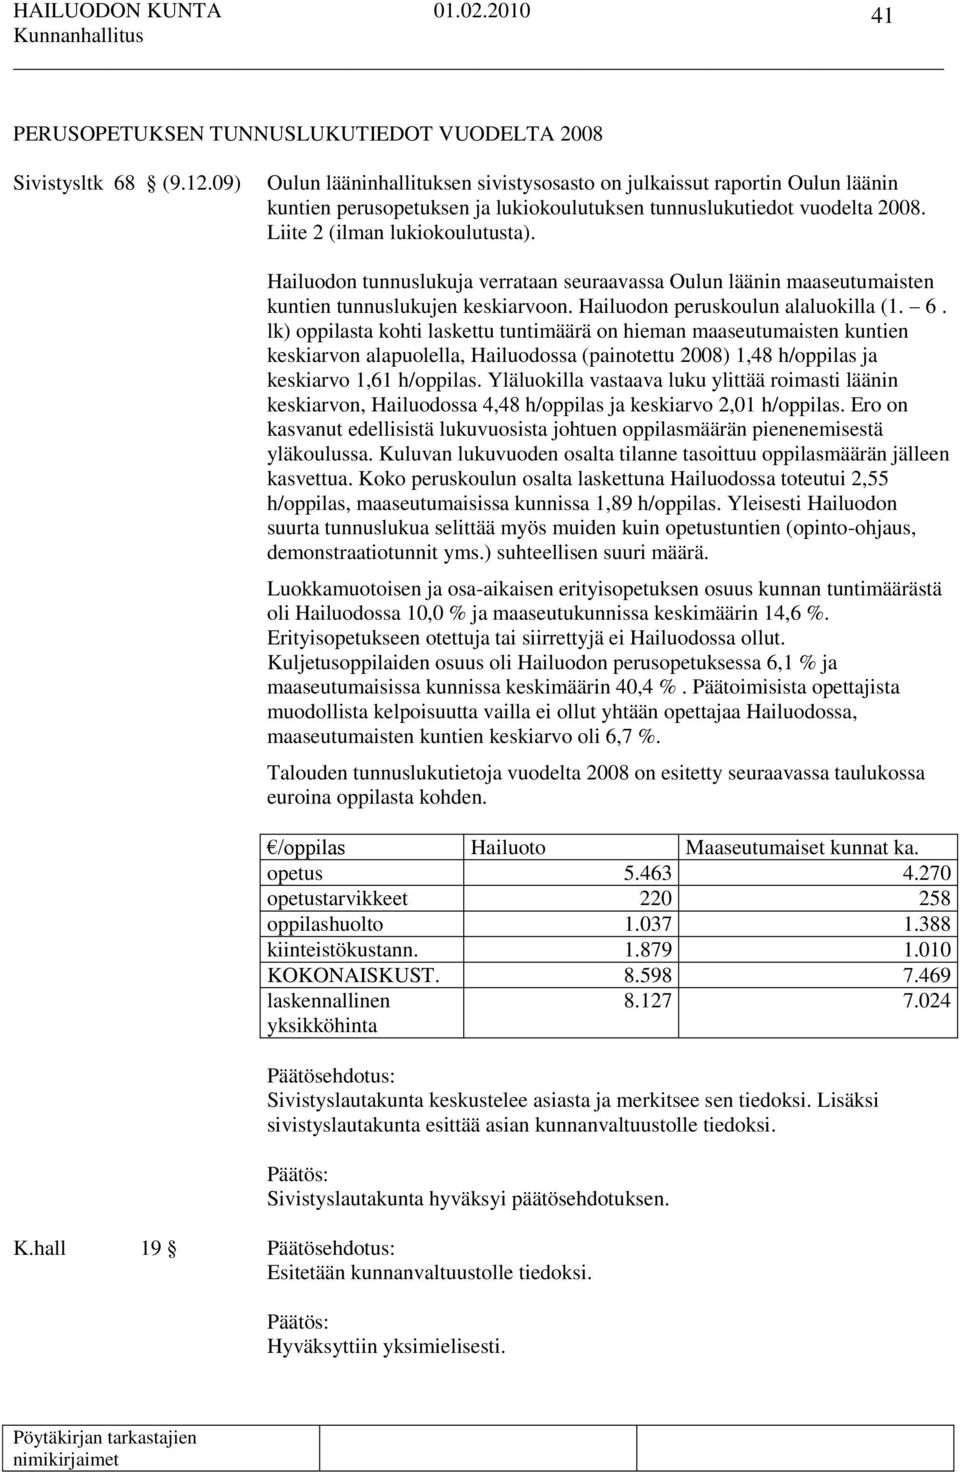 Hailuodon tunnuslukuja verrataan seuraavassa Oulun läänin maaseutumaisten kuntien tunnuslukujen keskiarvoon. Hailuodon peruskoulun alaluokilla (1. 6.